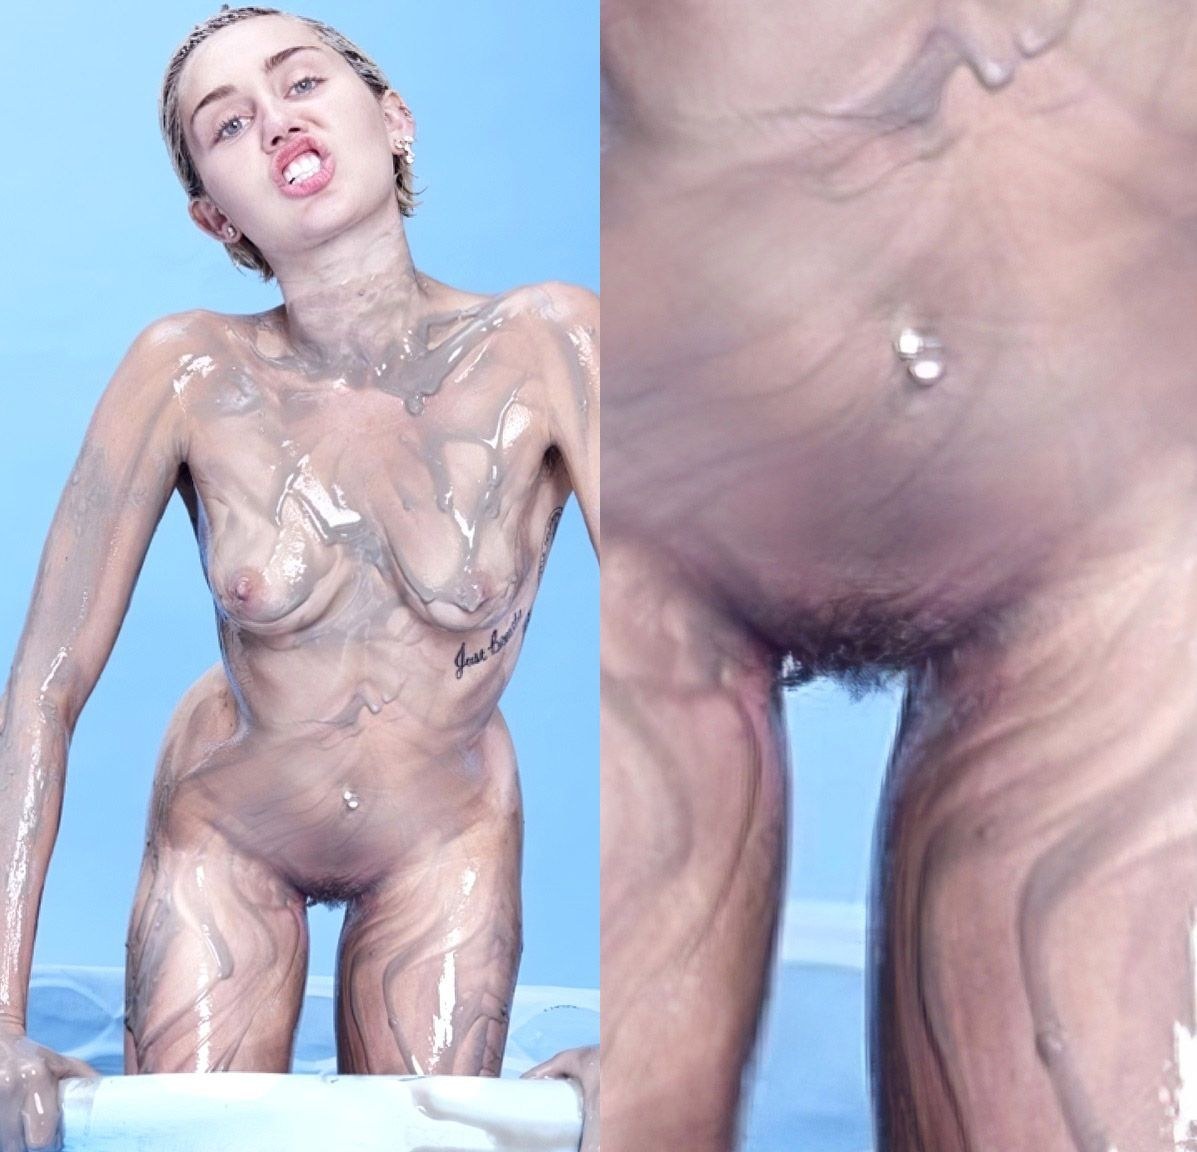 Miley cyrus nude photo hack - 🧡 Miley Cyrus New Nude Photos L...